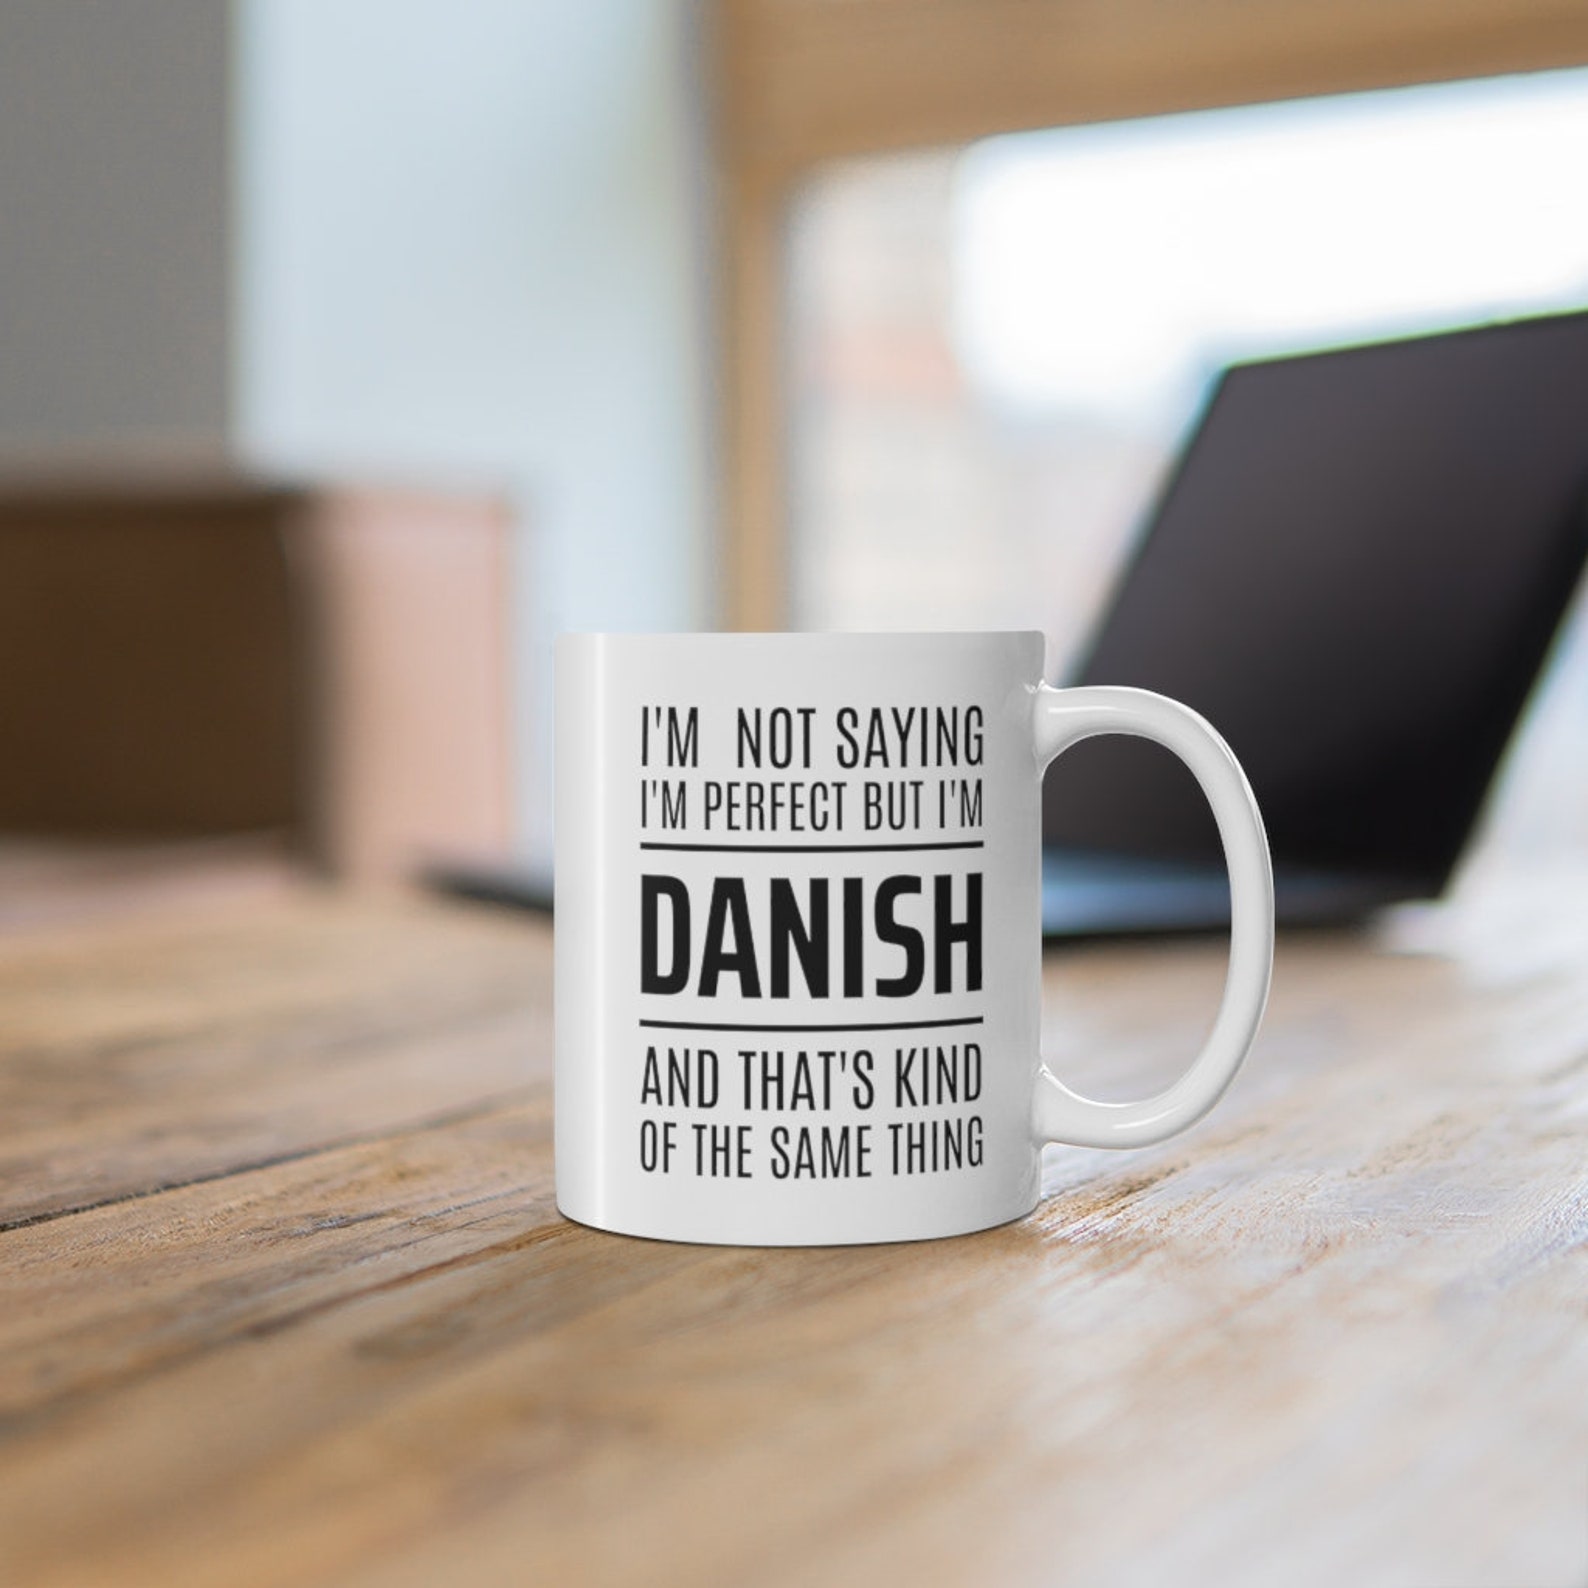 Denmark Gift Ideas Gift for Danish Denmark Mug Danish Gift - Etsy UK